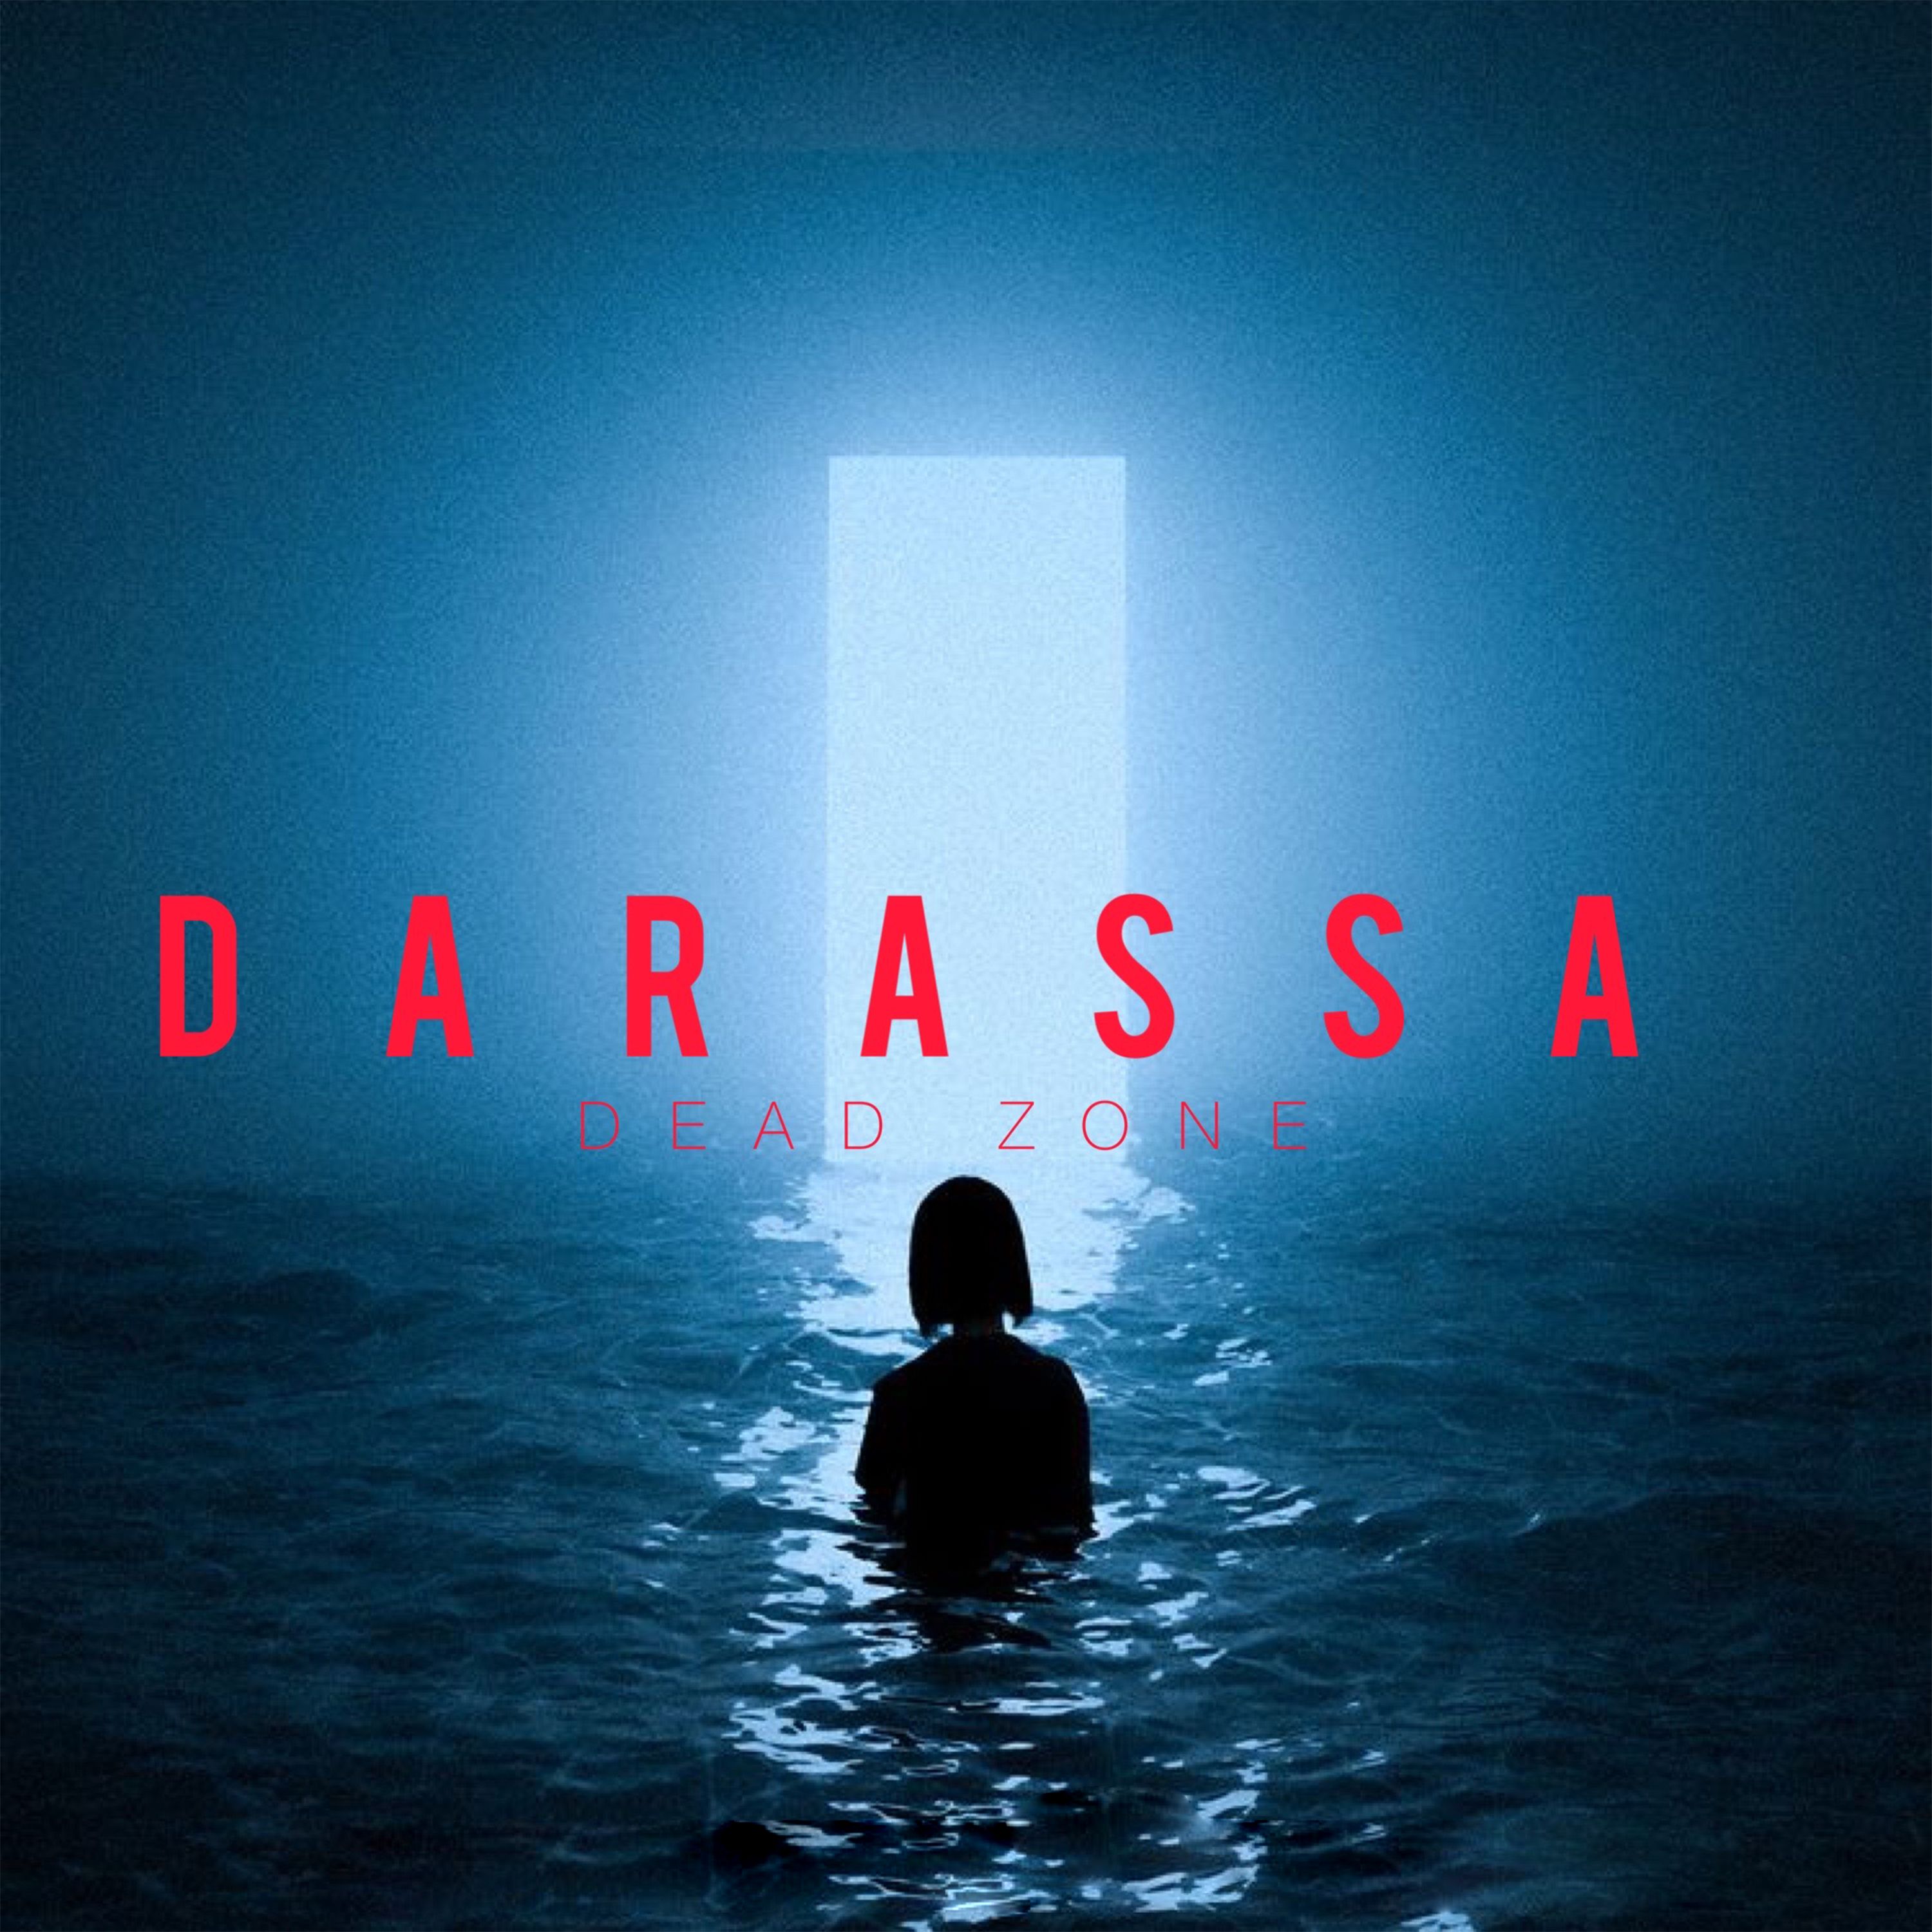 Darassa - Dead Zone